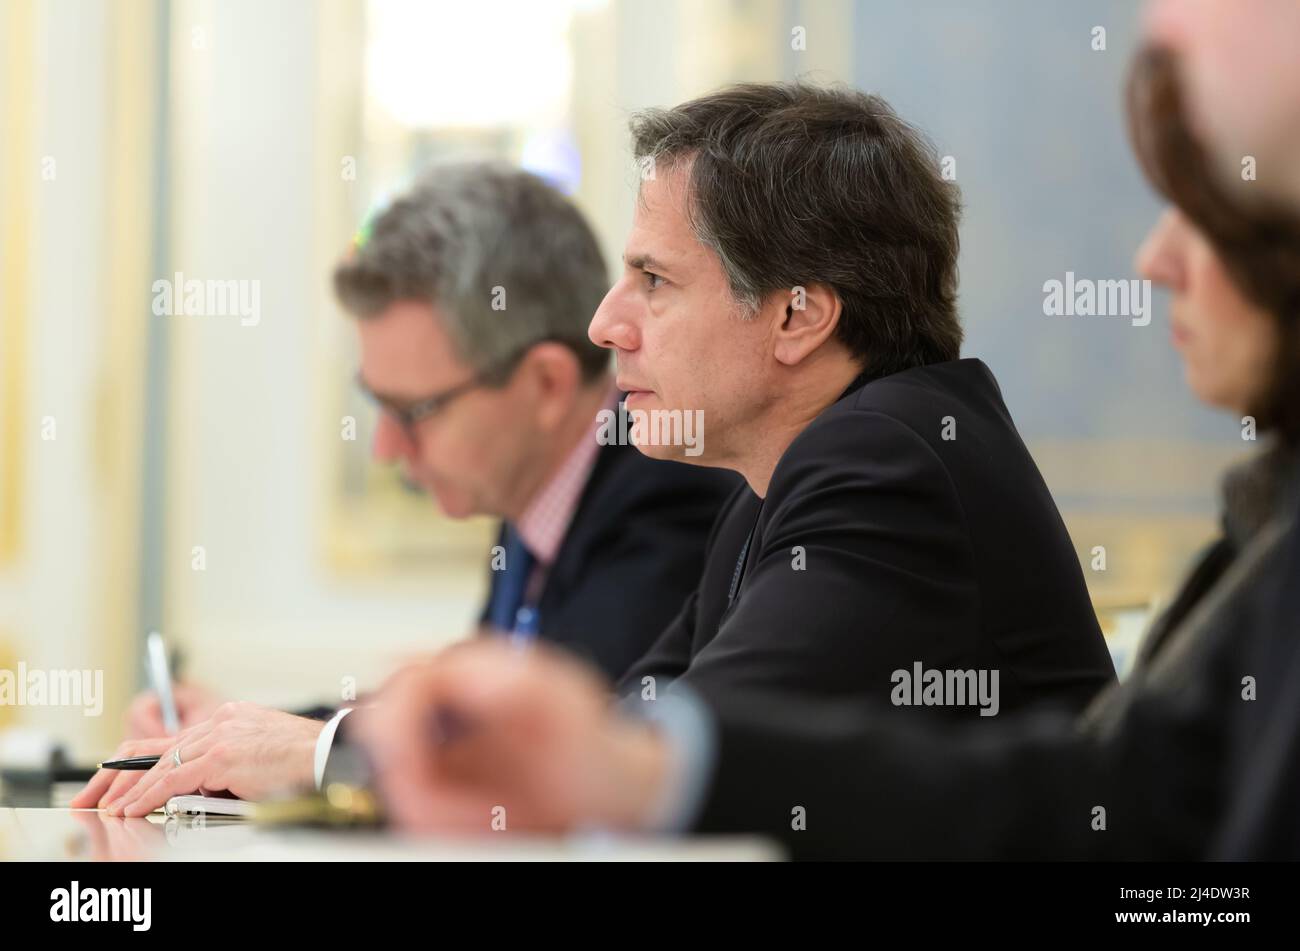 Antony Blinken, un fonctionnaire du gouvernement américain et diplomate servant de secrétaire d’État des États-Unis en 71st, rencontre le président de l’Ukraine Petro Porochenko. Banque D'Images